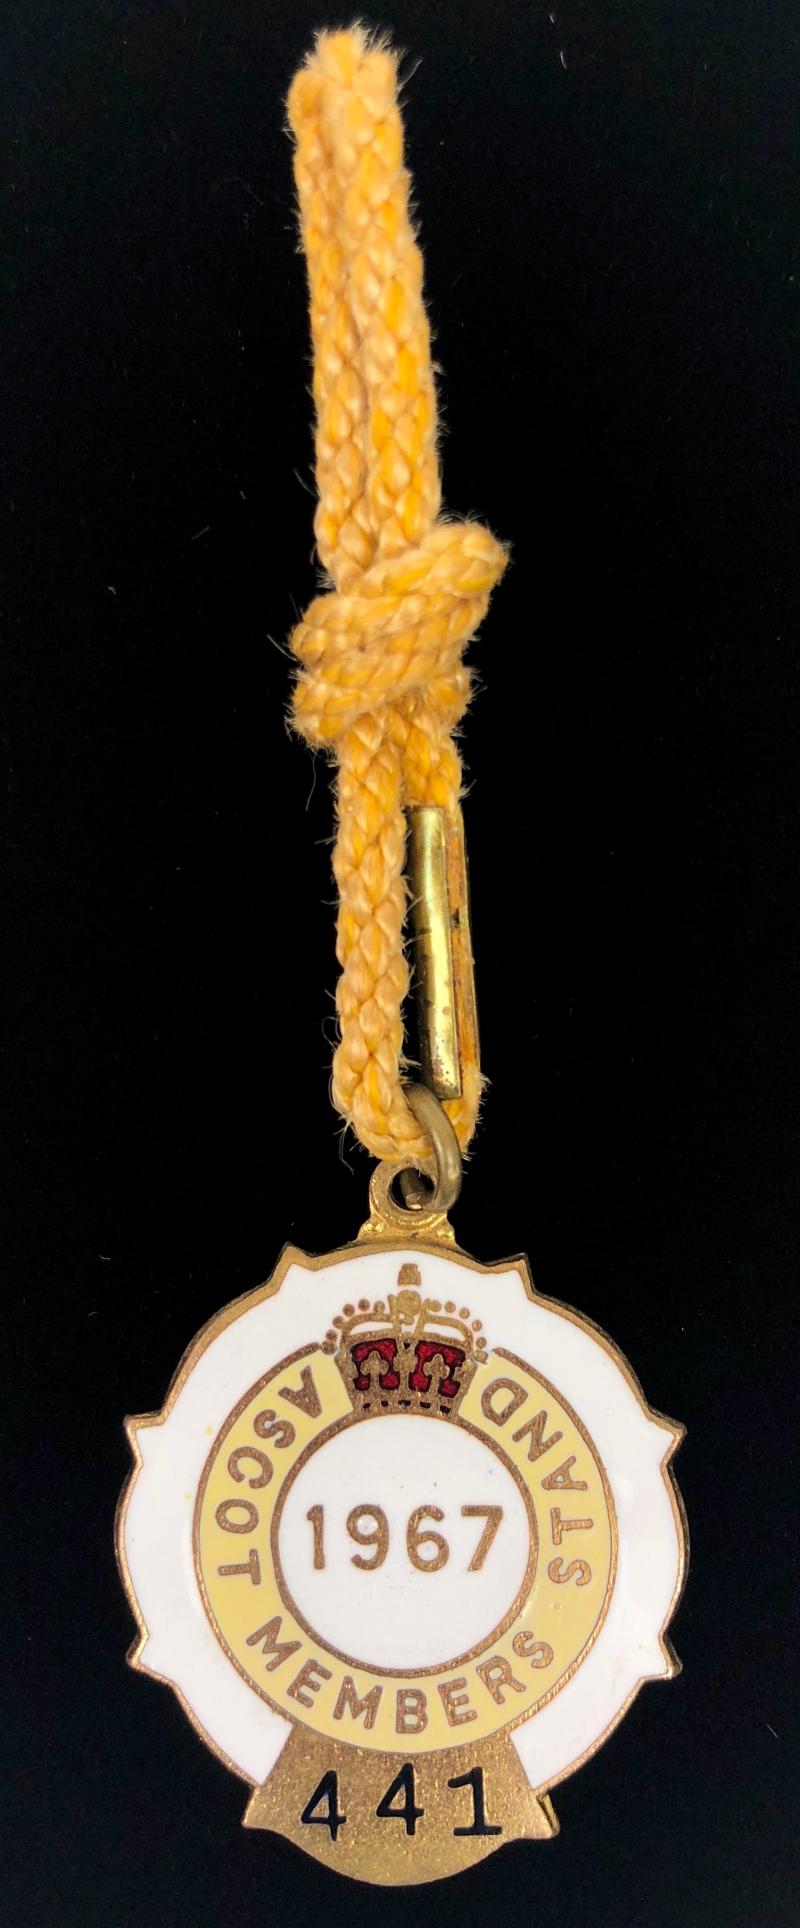 1967 Ascot Members Stand horse racing club badge